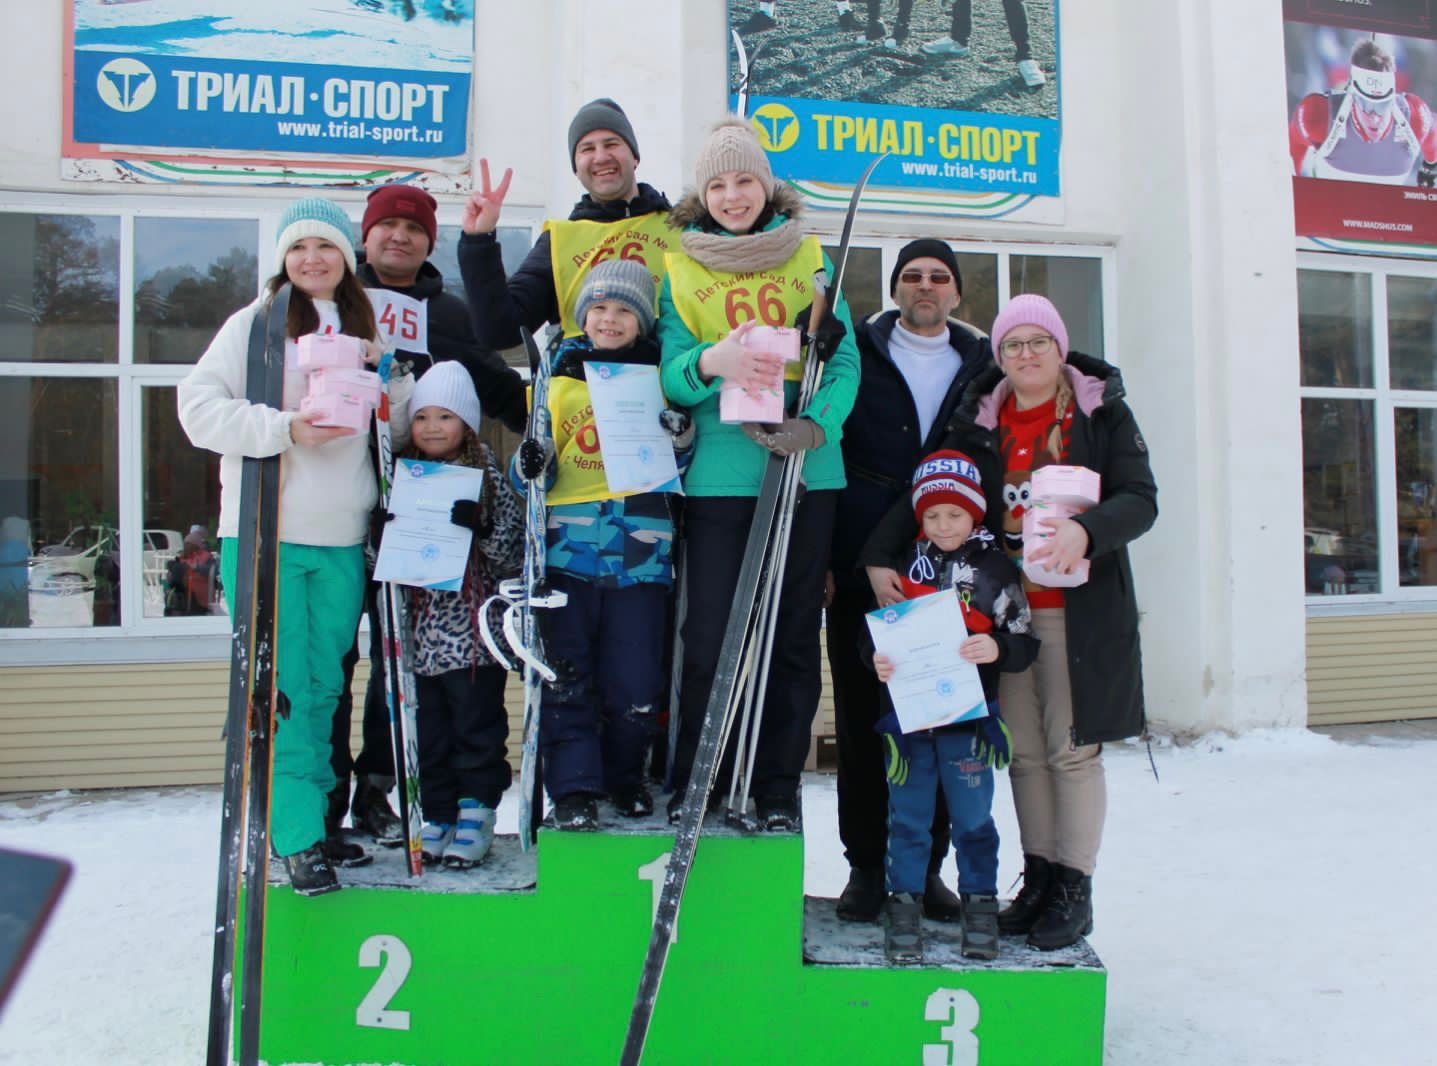 4 марта на Муниципальной лыжной базе состоялся лыжный праздник Тракторозаводского района